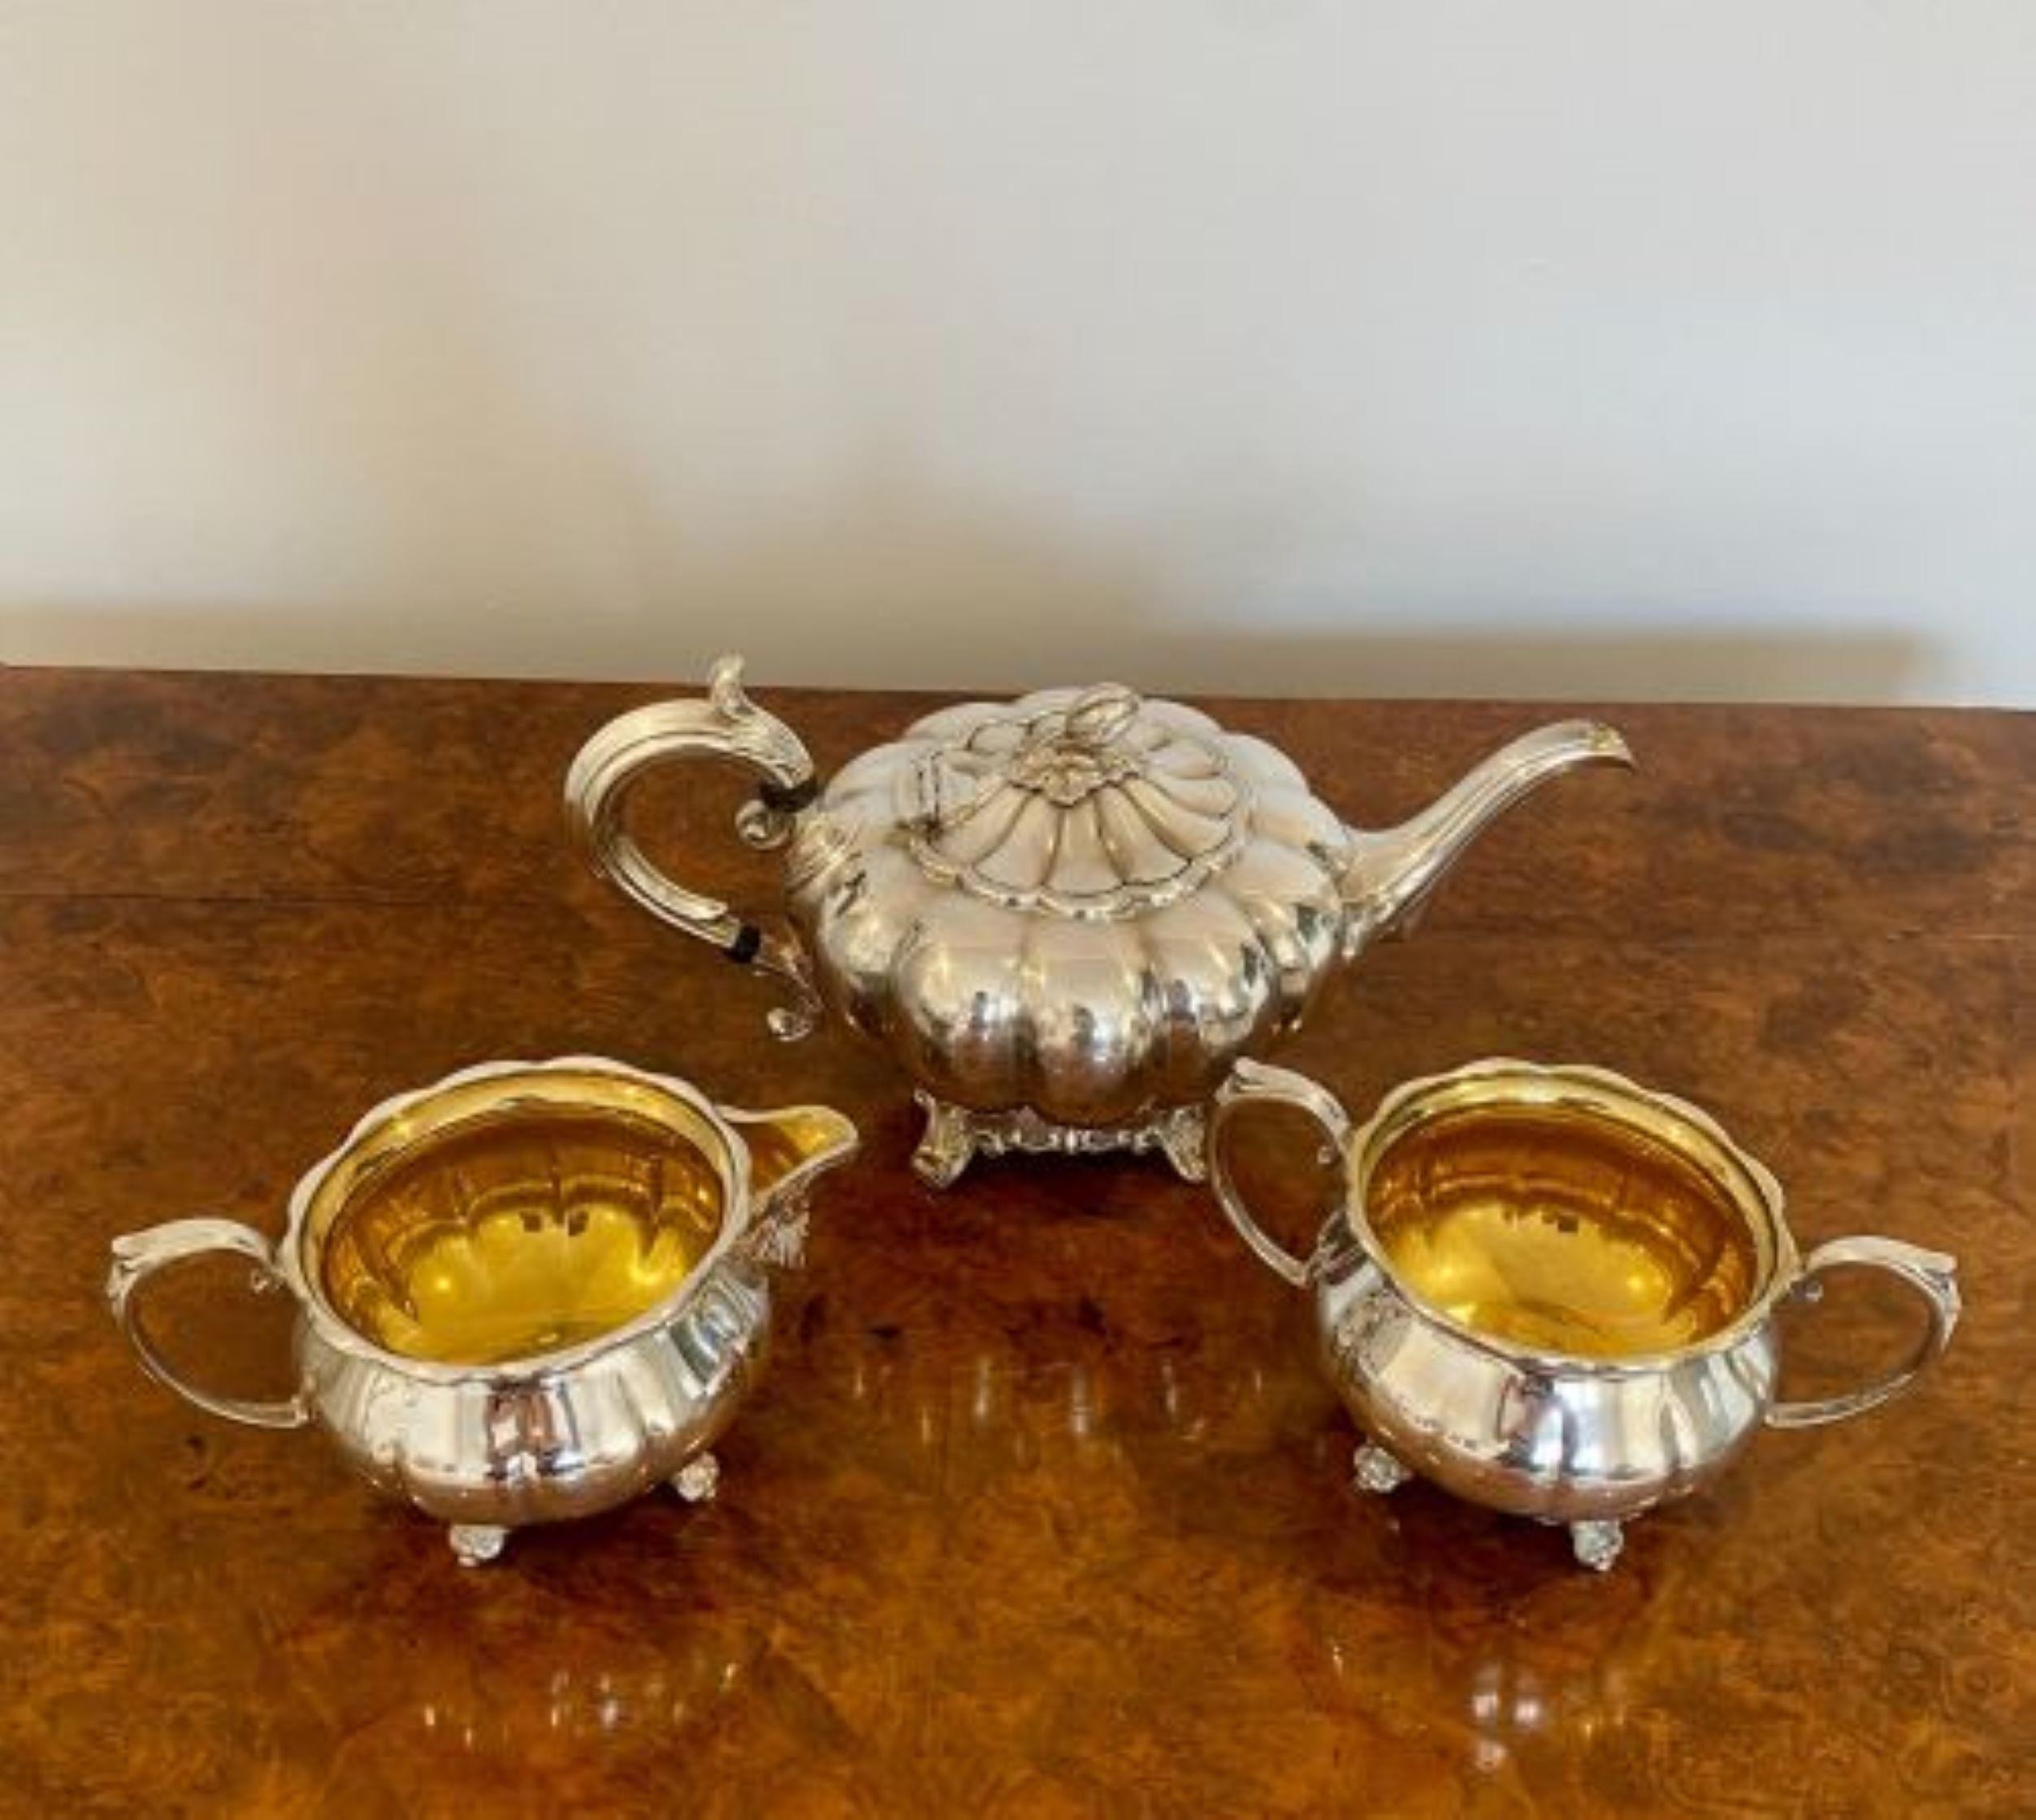 silver on copper tea set markings